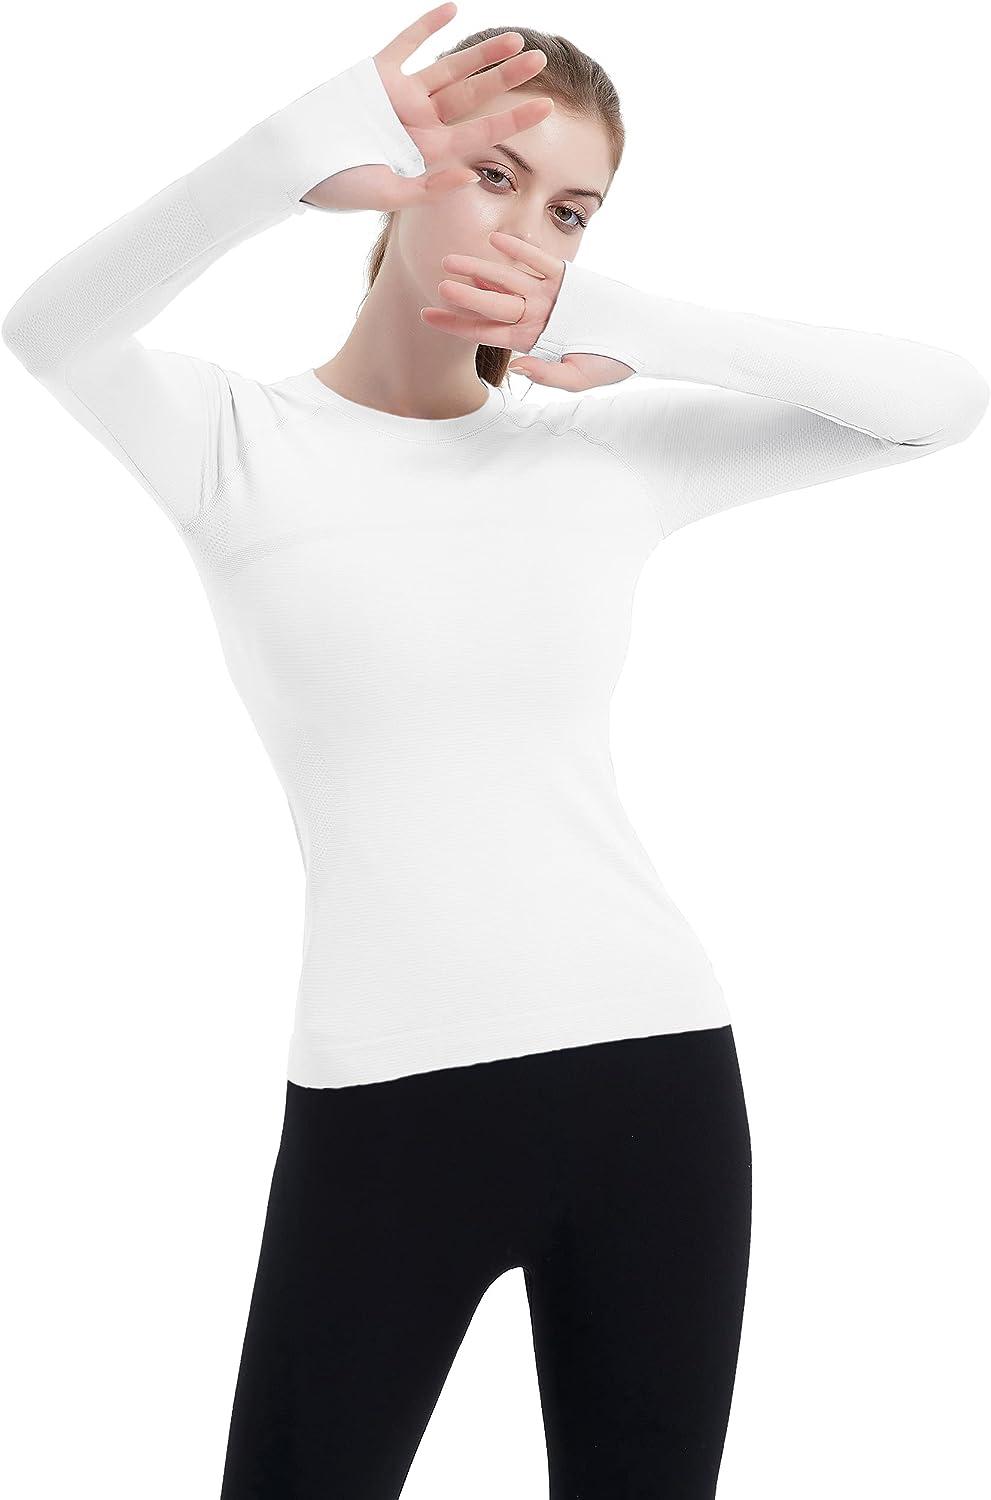 Athlete Seamless Workout Tee - White, Women's T-Shirts